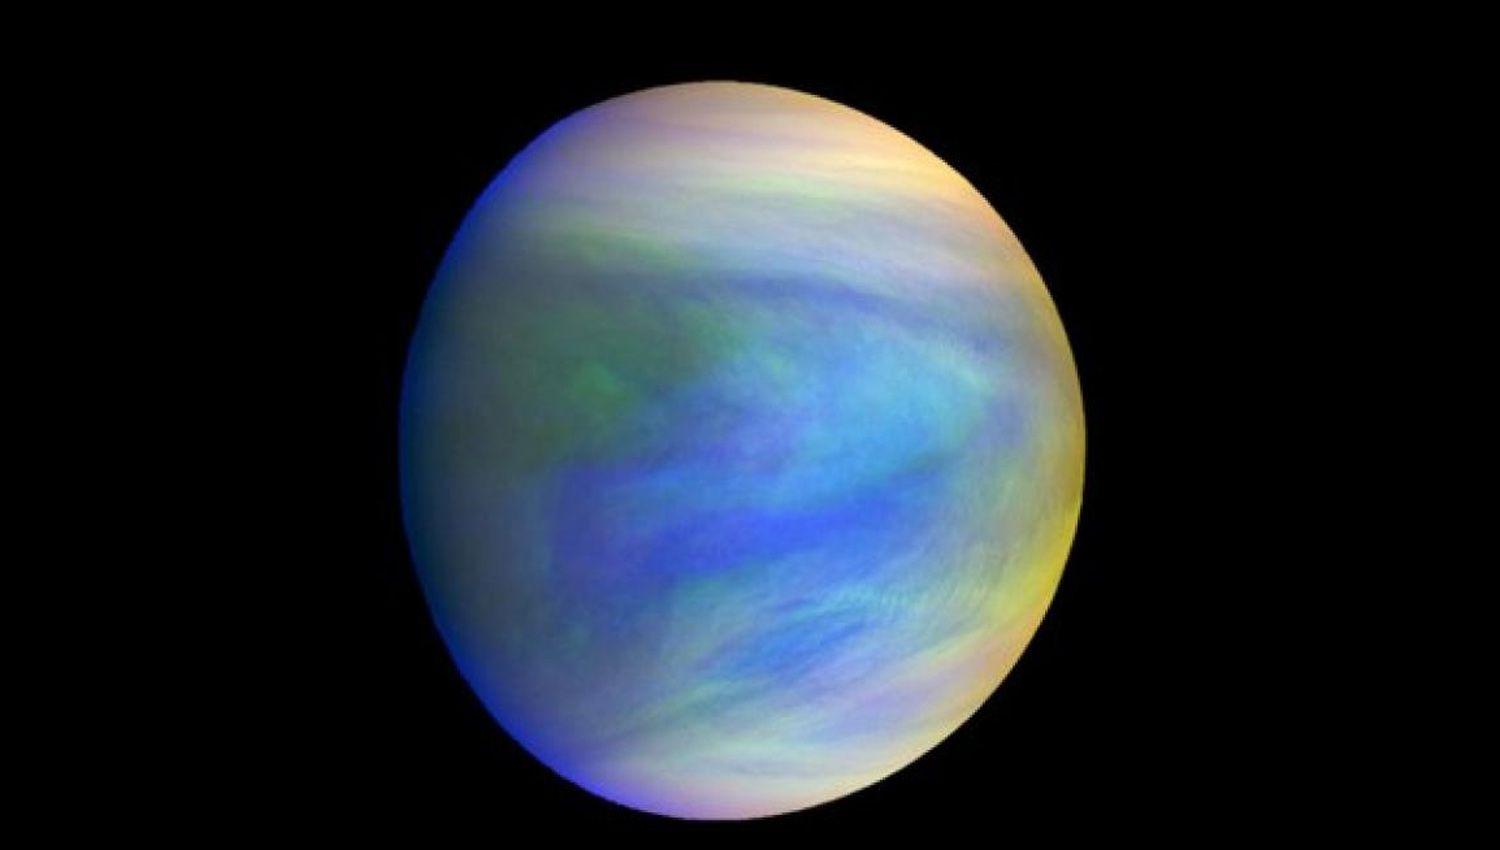 Cientiacuteficos hallaron indicios de vida en el planeta Venus